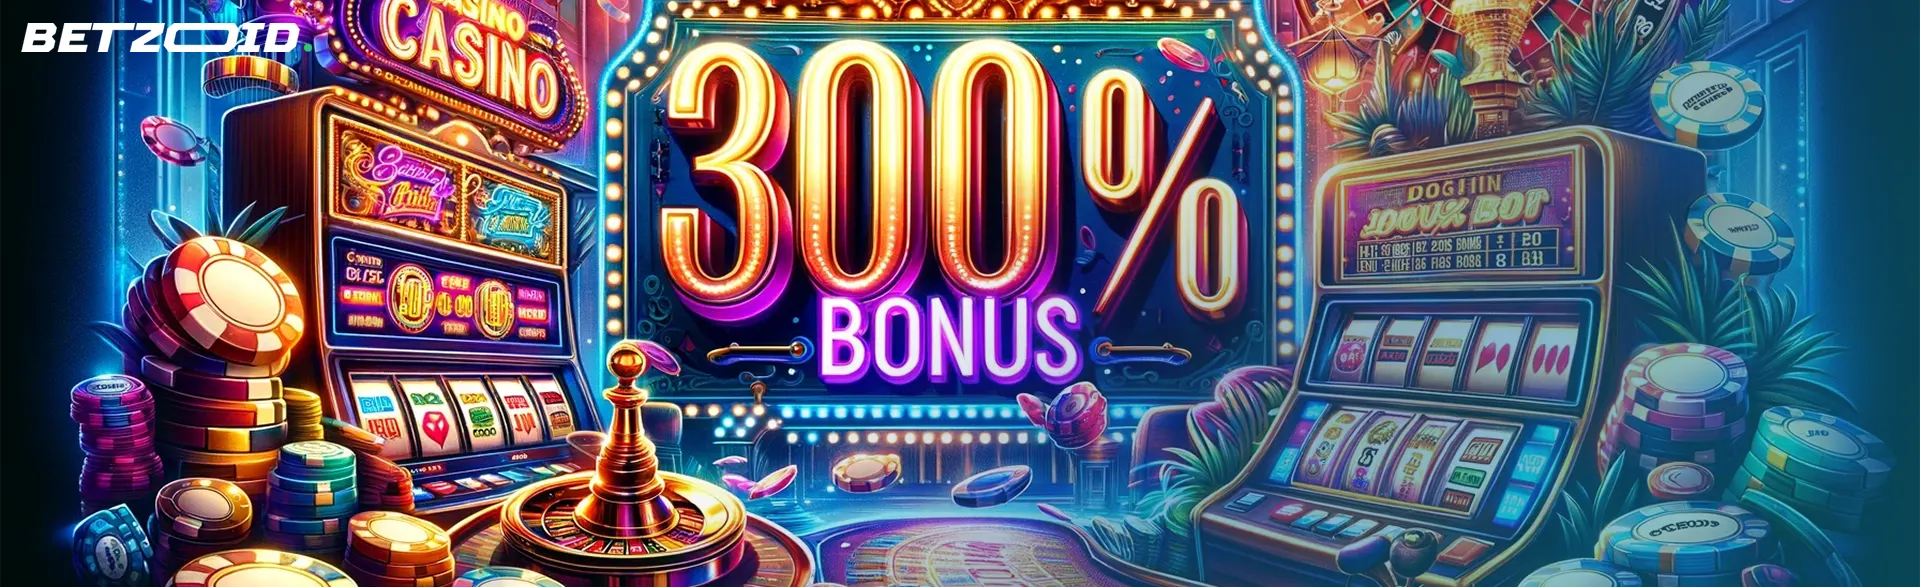 Variety of games in 300% bonus casinos.